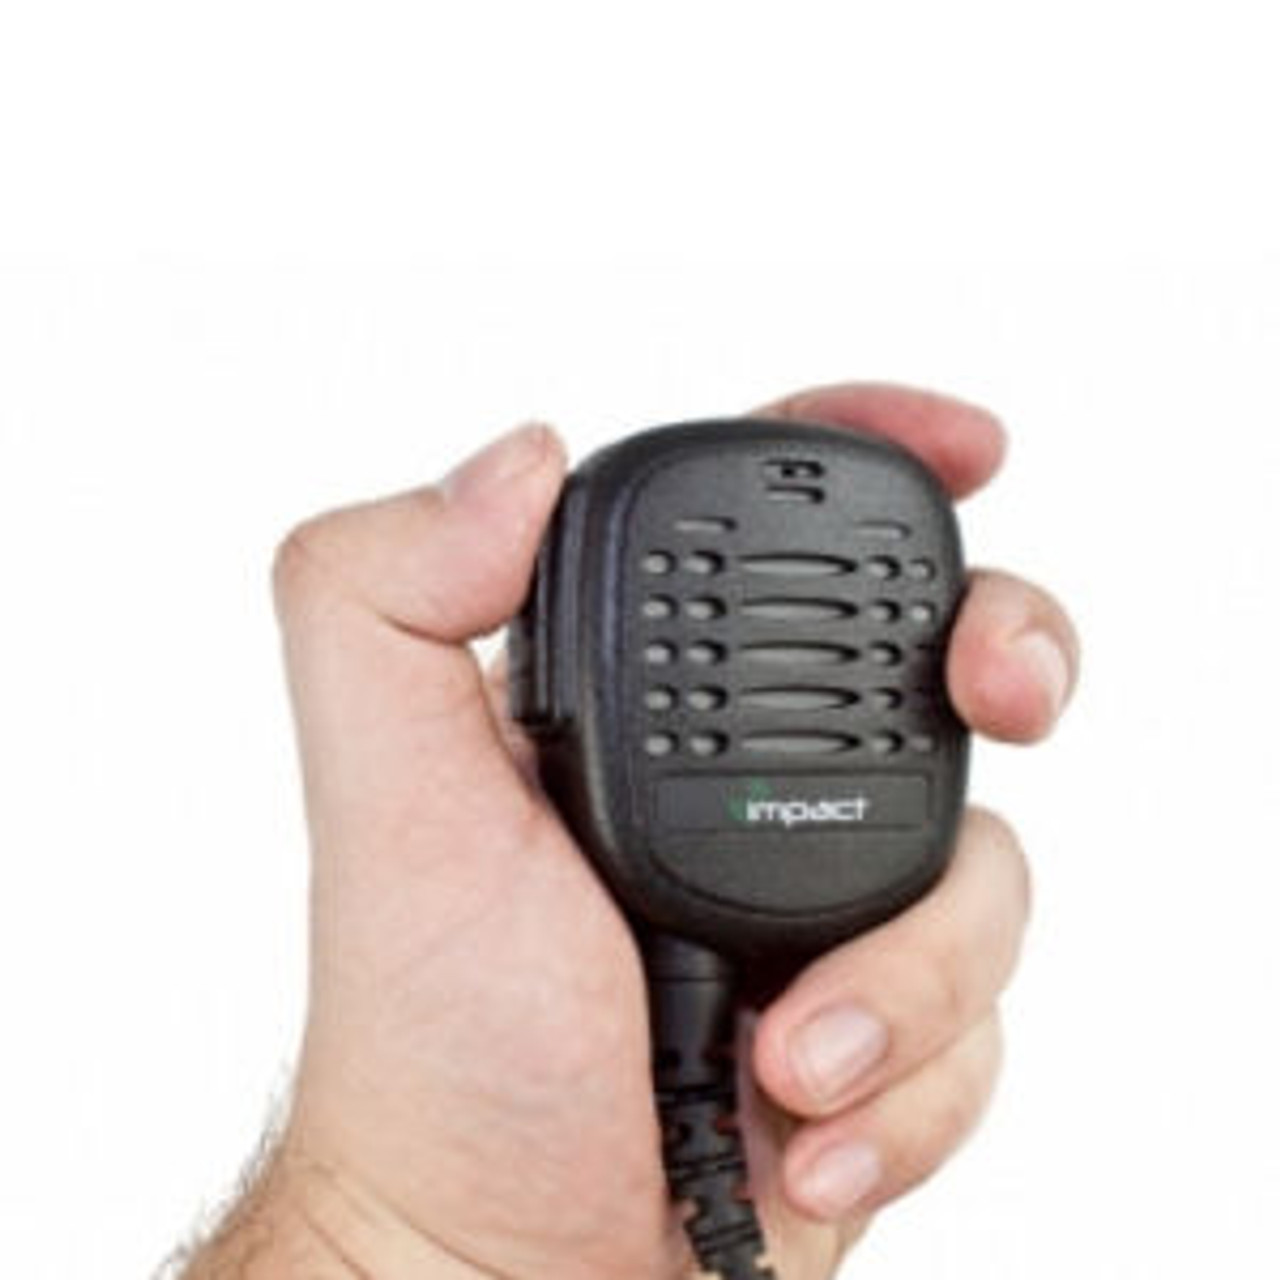 Motorola P50 (3 Cell) Noise Canceling Speaker Mic.